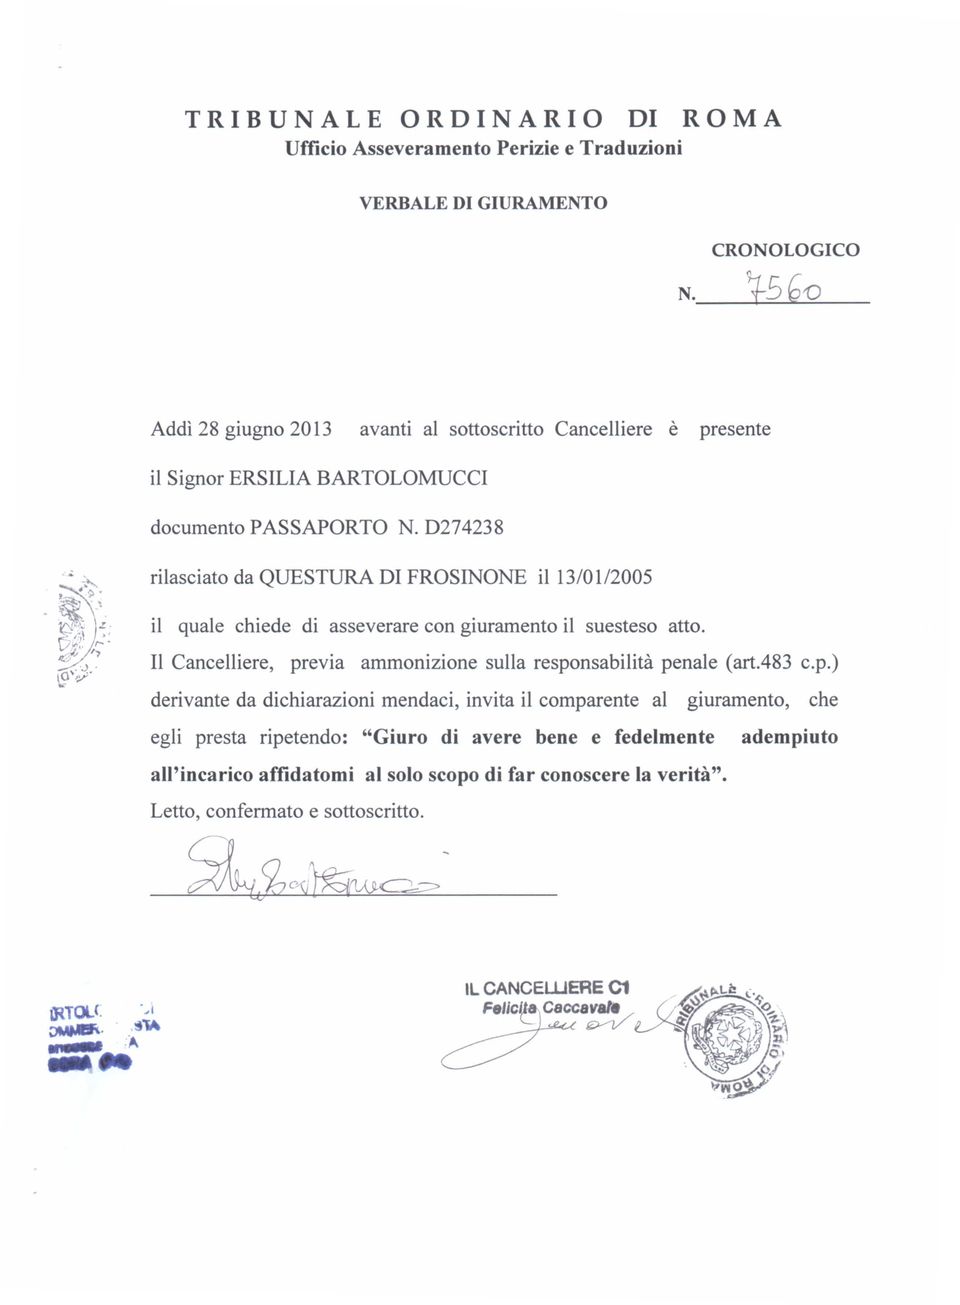 D274238 rilasciato da QUESTURA DI FROSINONE il 13/0112005 il quale chiede di asseverare con giuramento il sue steso atto.